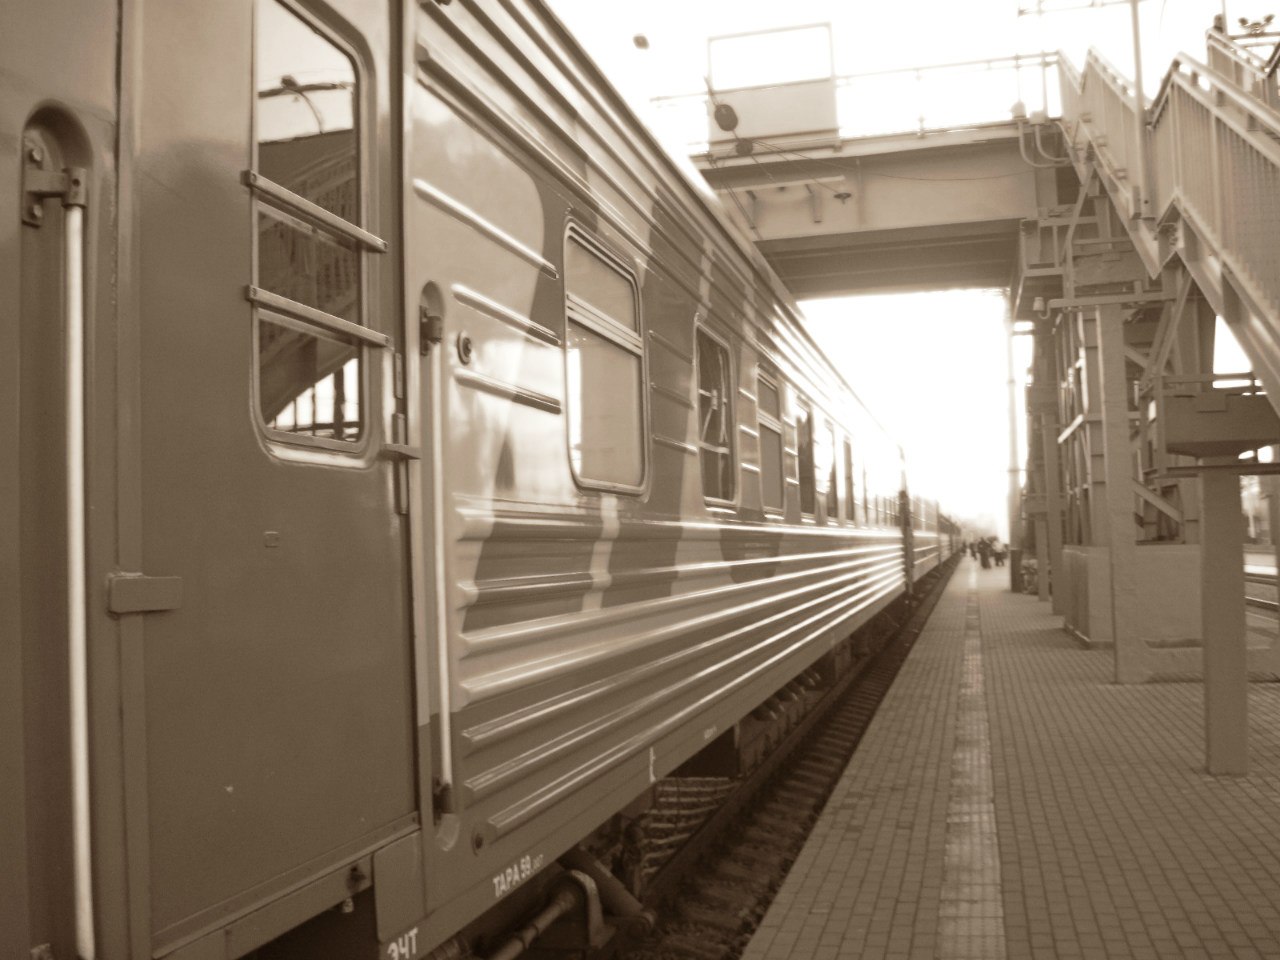 Вагон поезда новокузнецк